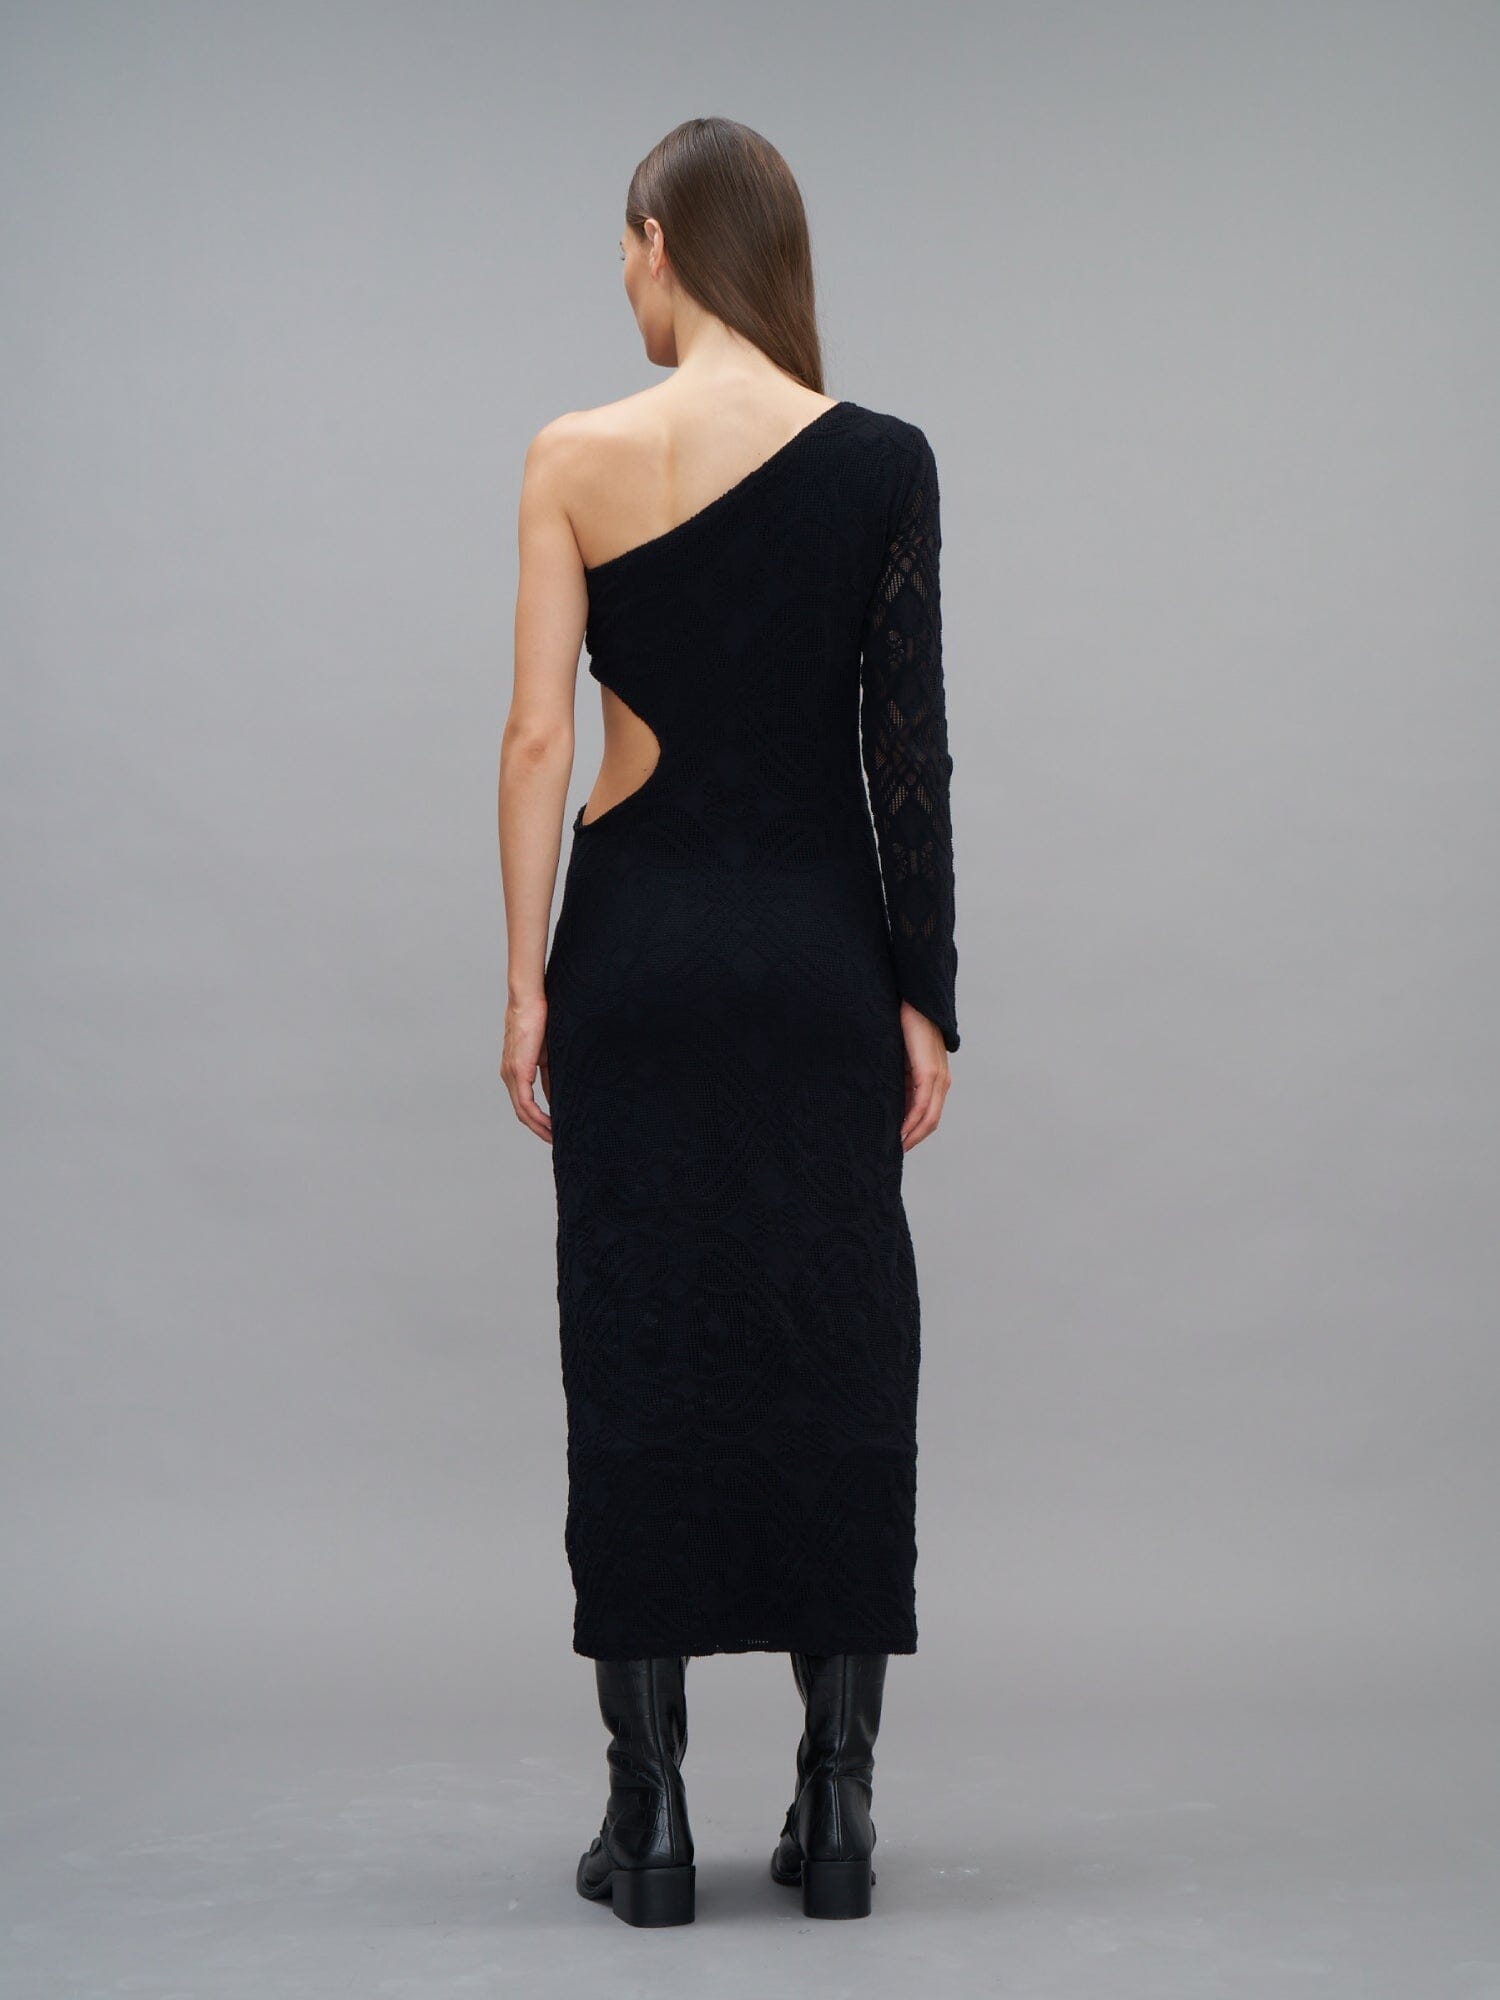 PROPRIANO - Robe longue ajustée asymétrique et ajourée en dentelle Noir Robe Fête Impériale